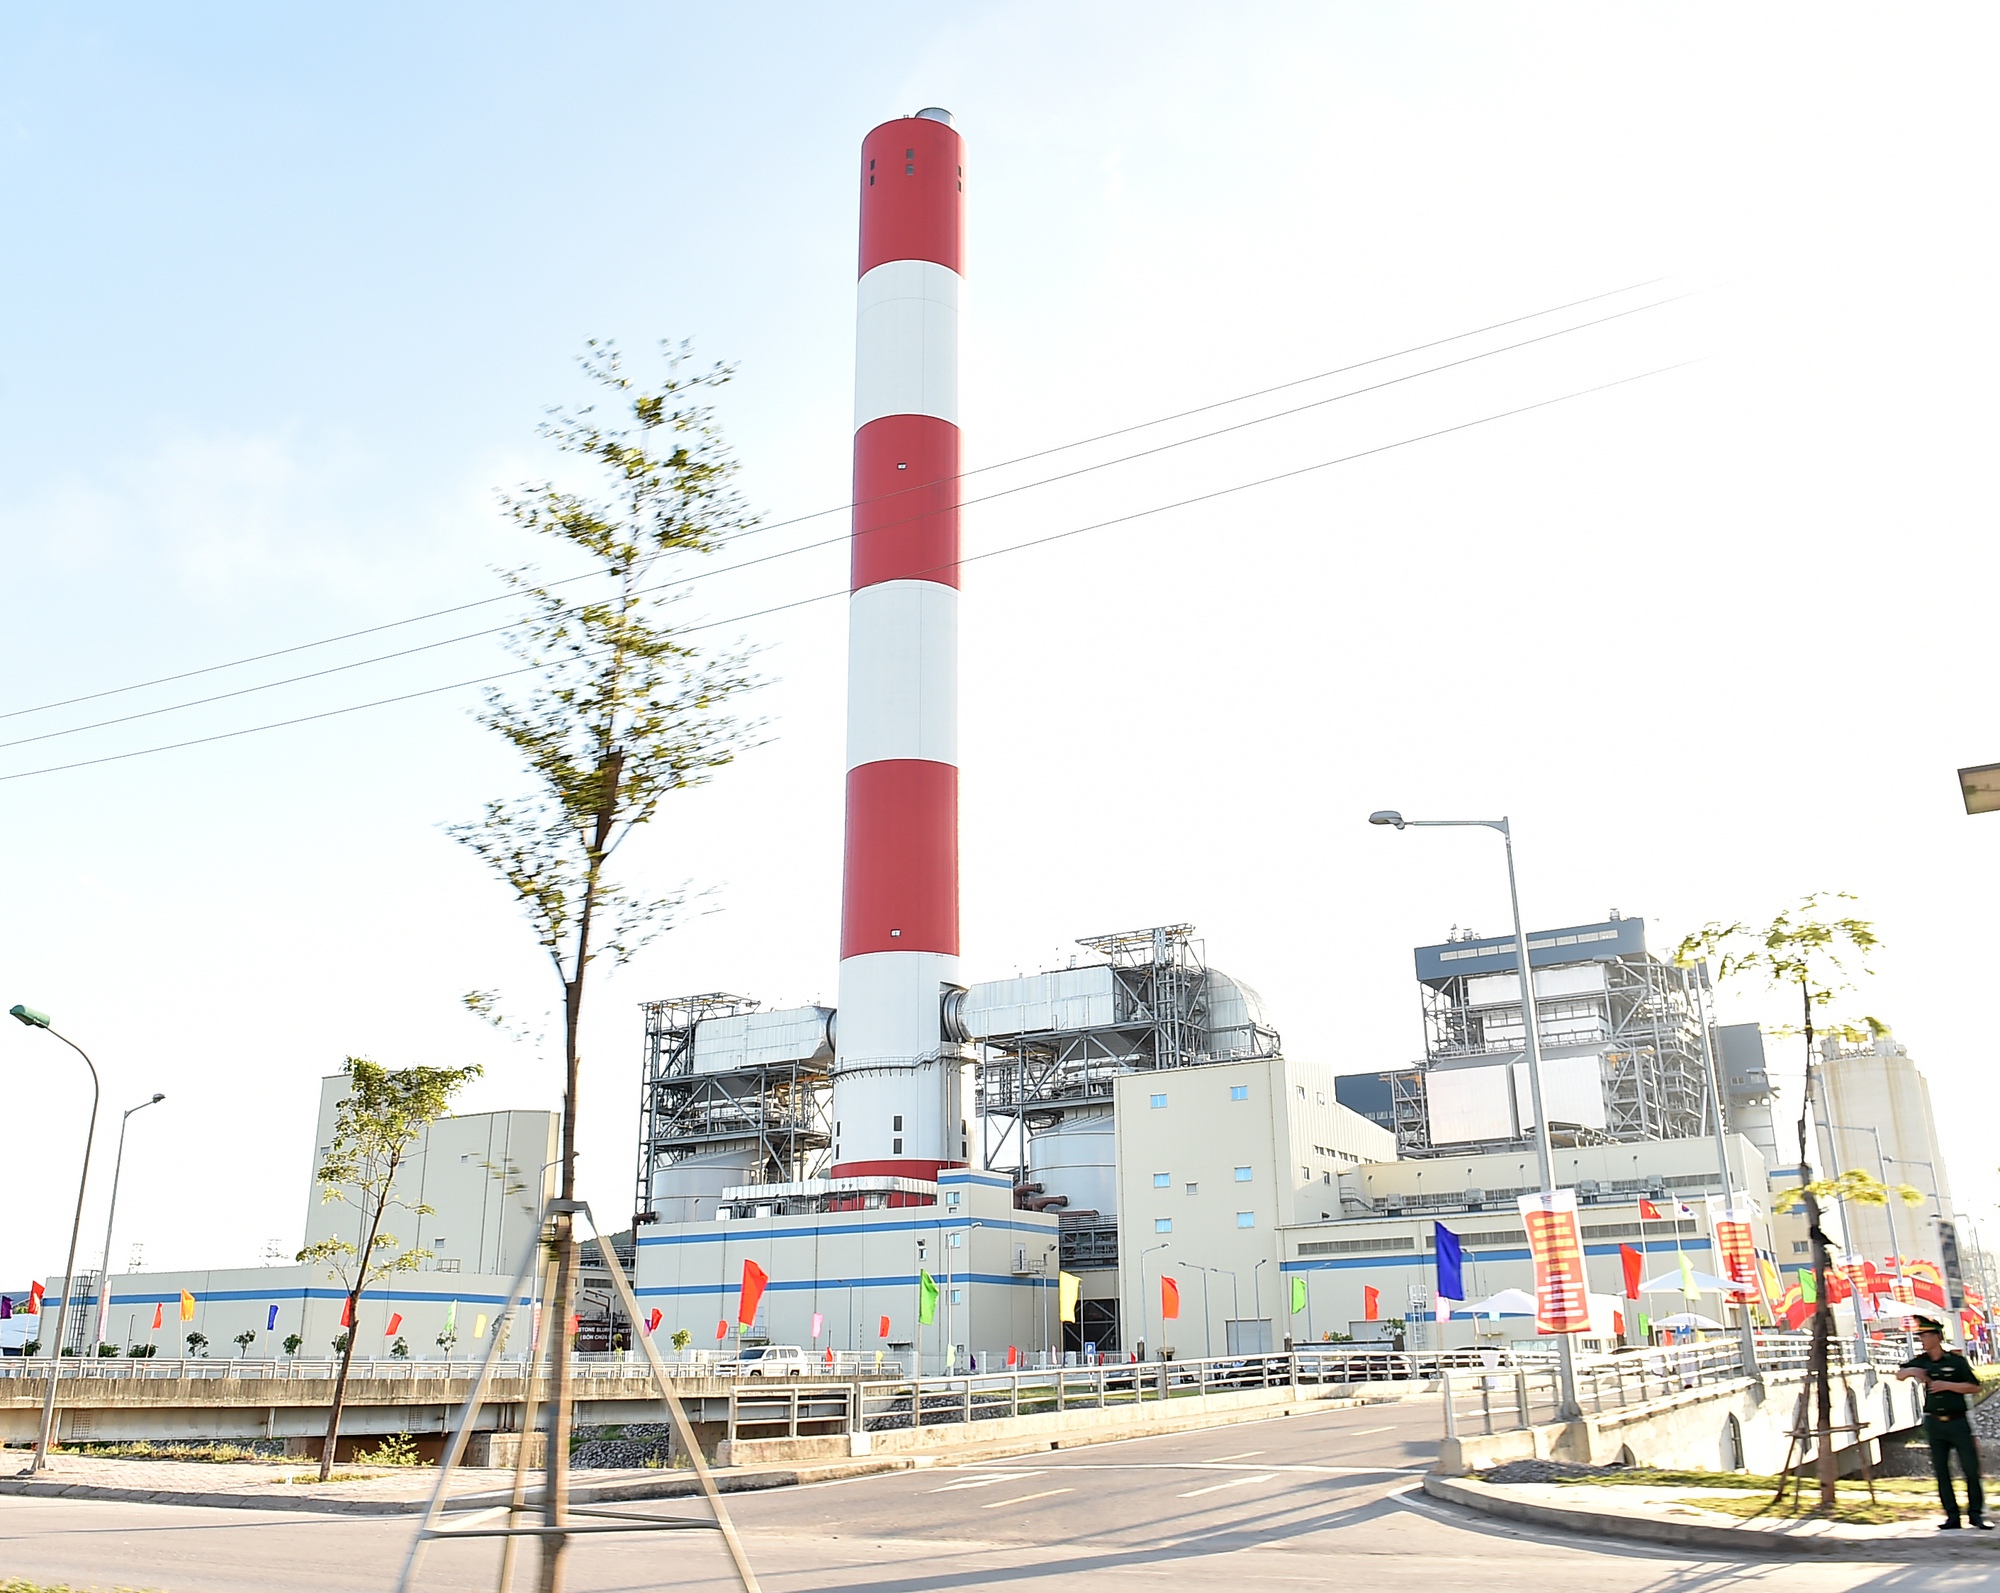 Khánh thành nhà máy nhiệt điện 2,8 tỷ USD công nghệ tiên tiến nhất hiện nay - Ảnh 3.